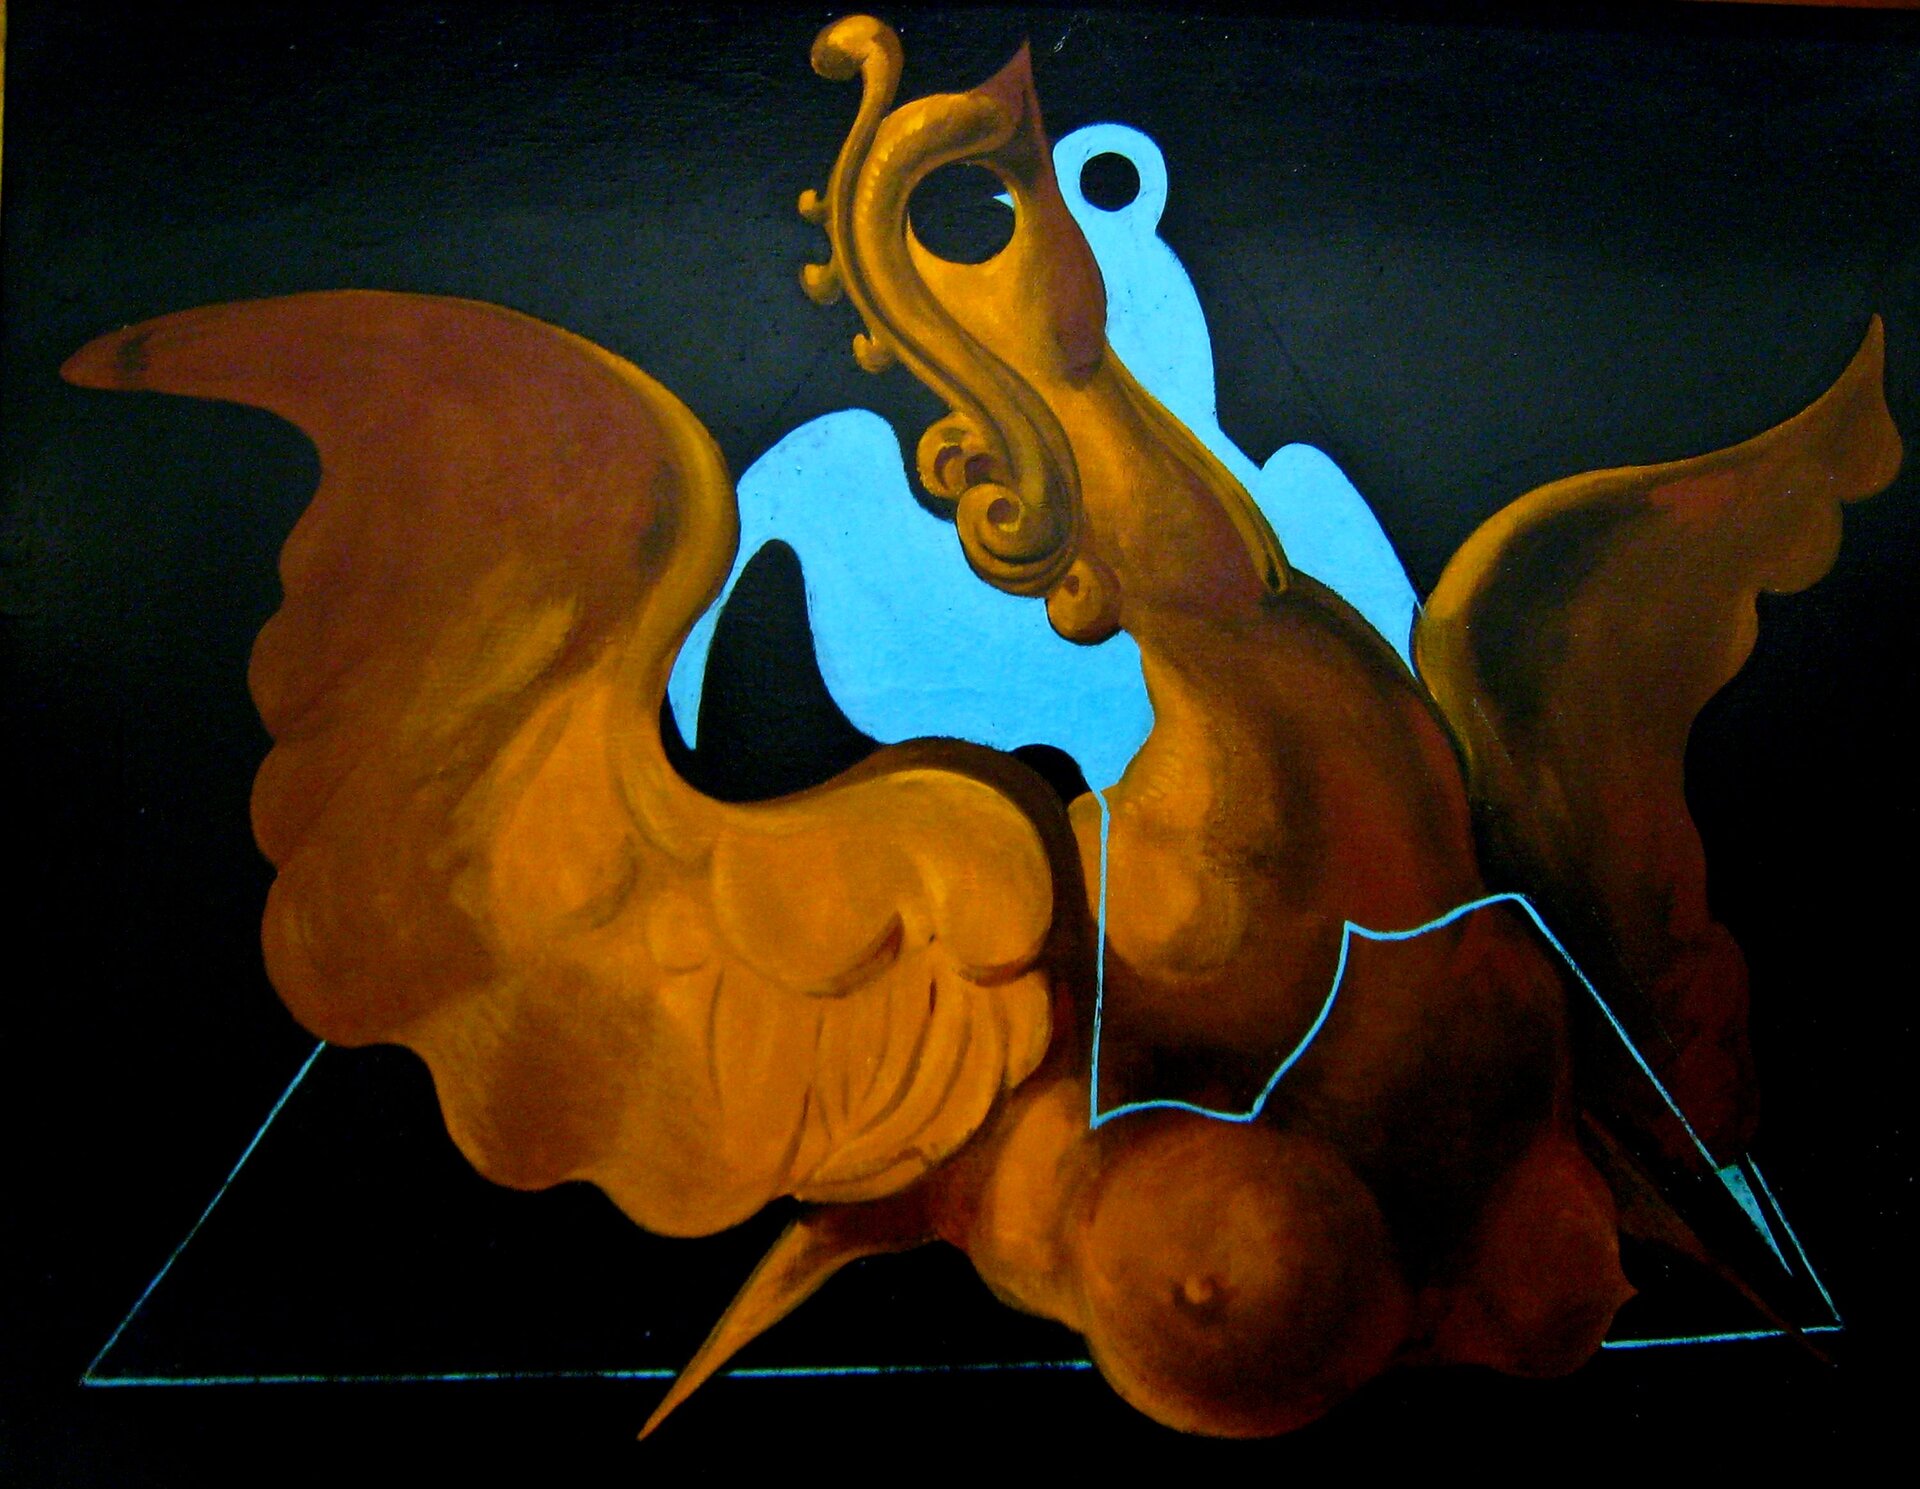 Ilustracja przedstawia obraz olejny „chimera” z cyklu „Upłaszczyznowienia” autorstwa Maxa Ernsta. Dzieło ukazuje surrealistyczną postać żółto złotego ptaka o rozpostartych skrzydłach i kobiecych piersiach, na czarnym tle. Oko stanowi otwór, głowę zdobią zawinięte w loki pióra. Postać ptaka wpisana jest w błękitny kontur trójkąta, zakończonego u góry nieregularną błękitną płaszczyzną.